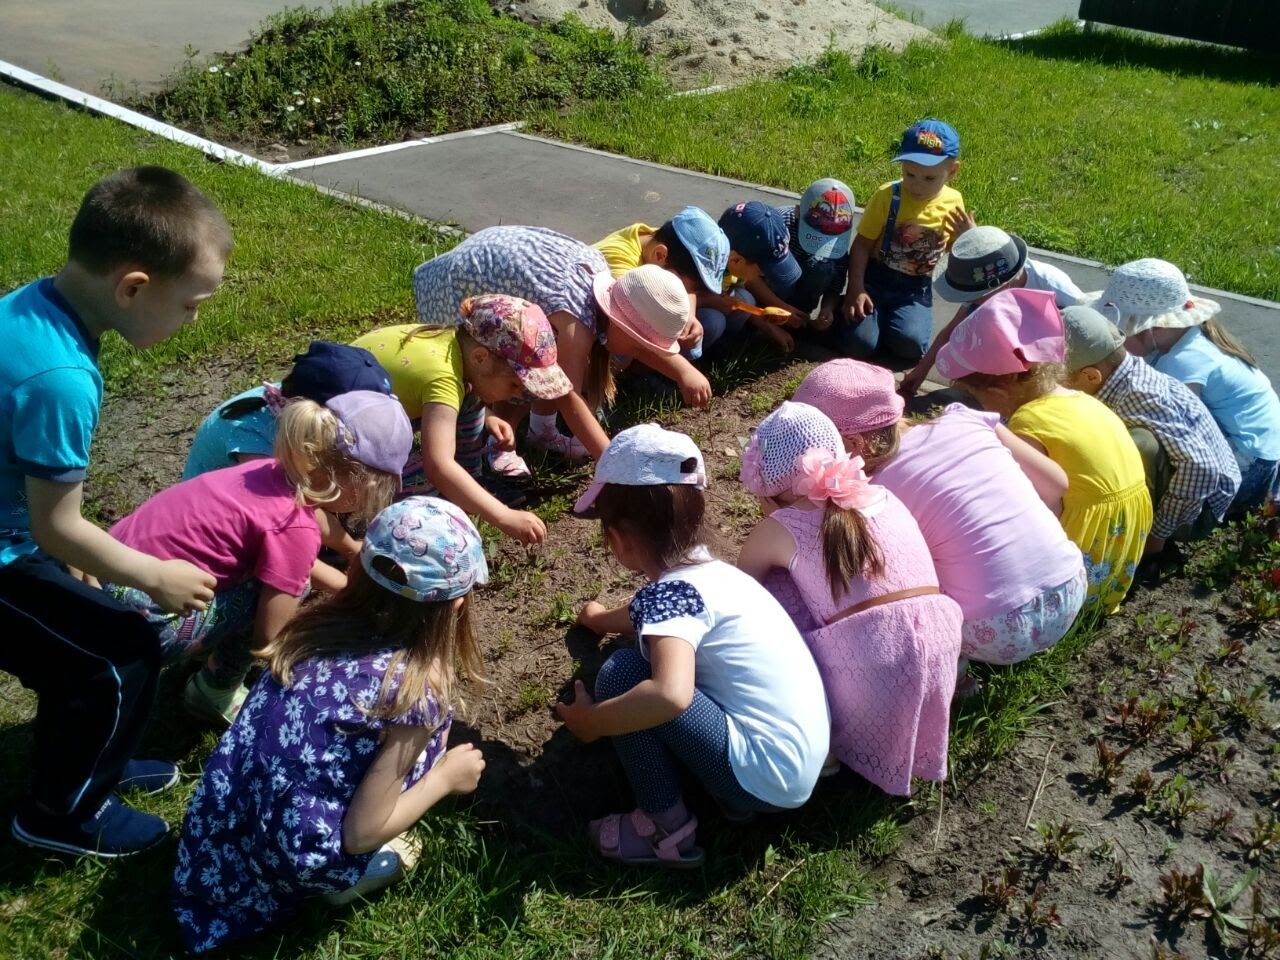 Верхнеуслонский детский сад «Солнышко» отметил свой первый юбилей